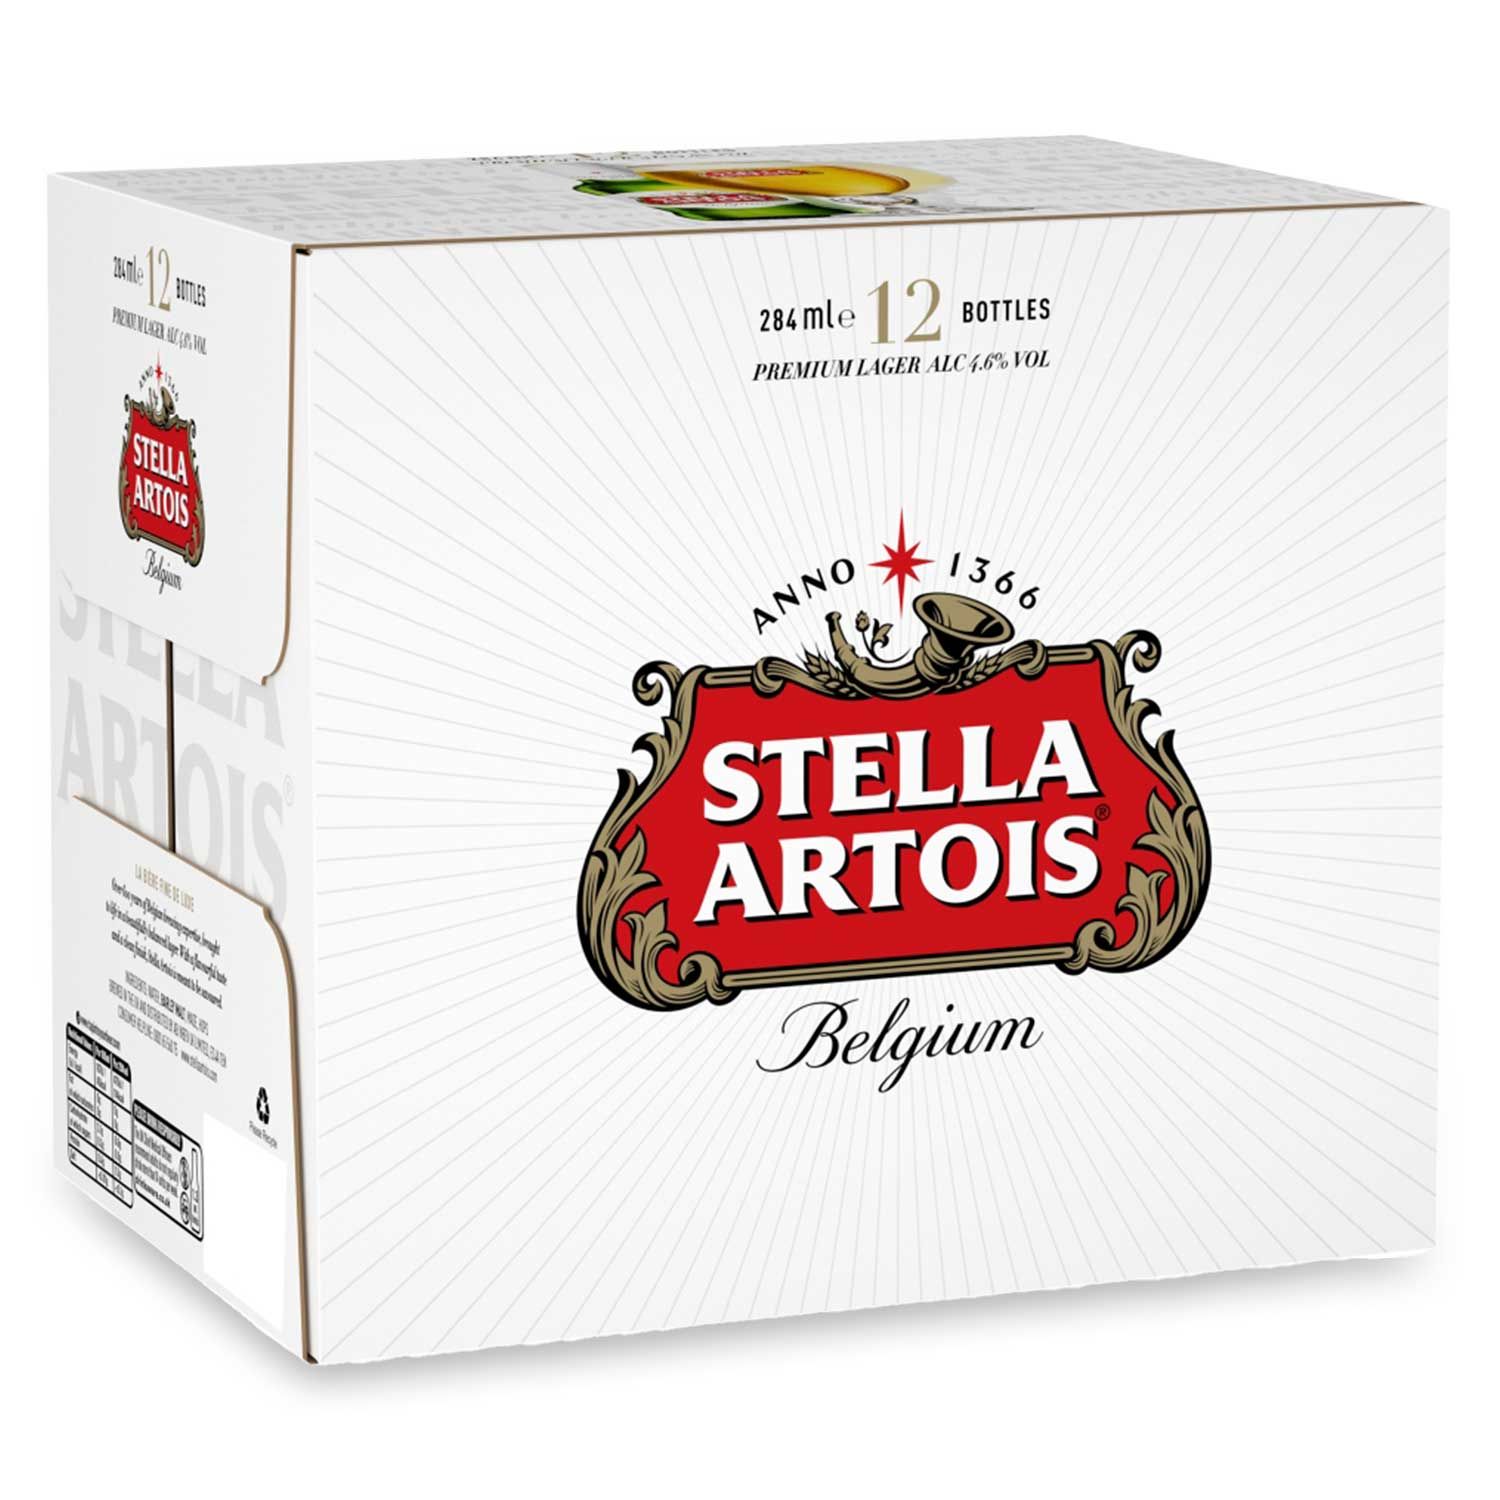 Stella Artois Belgium Premium Lager 12x284ml | ALDI